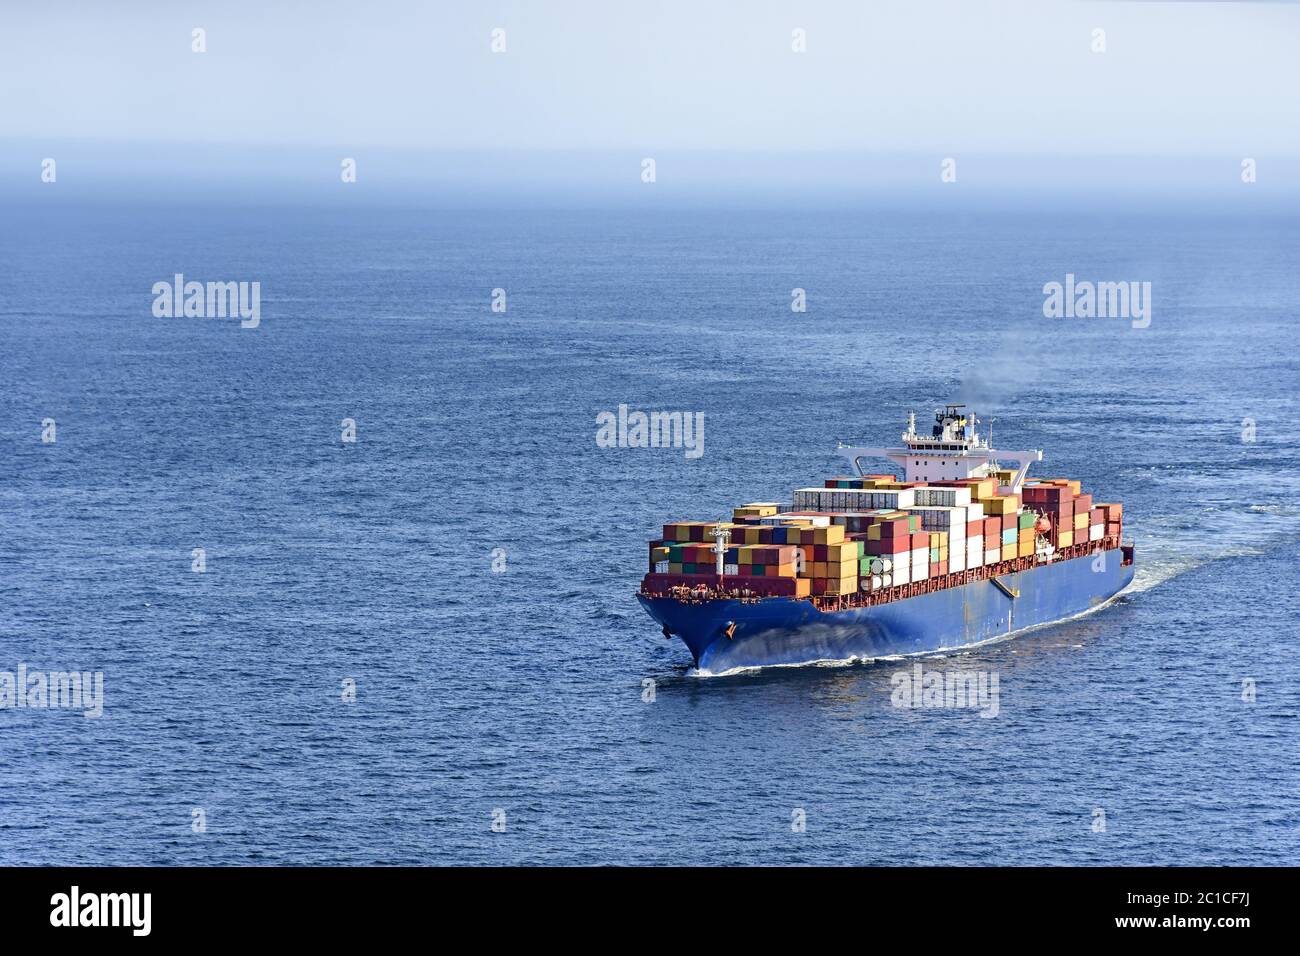 Cargo ship over ocean Stock Photo